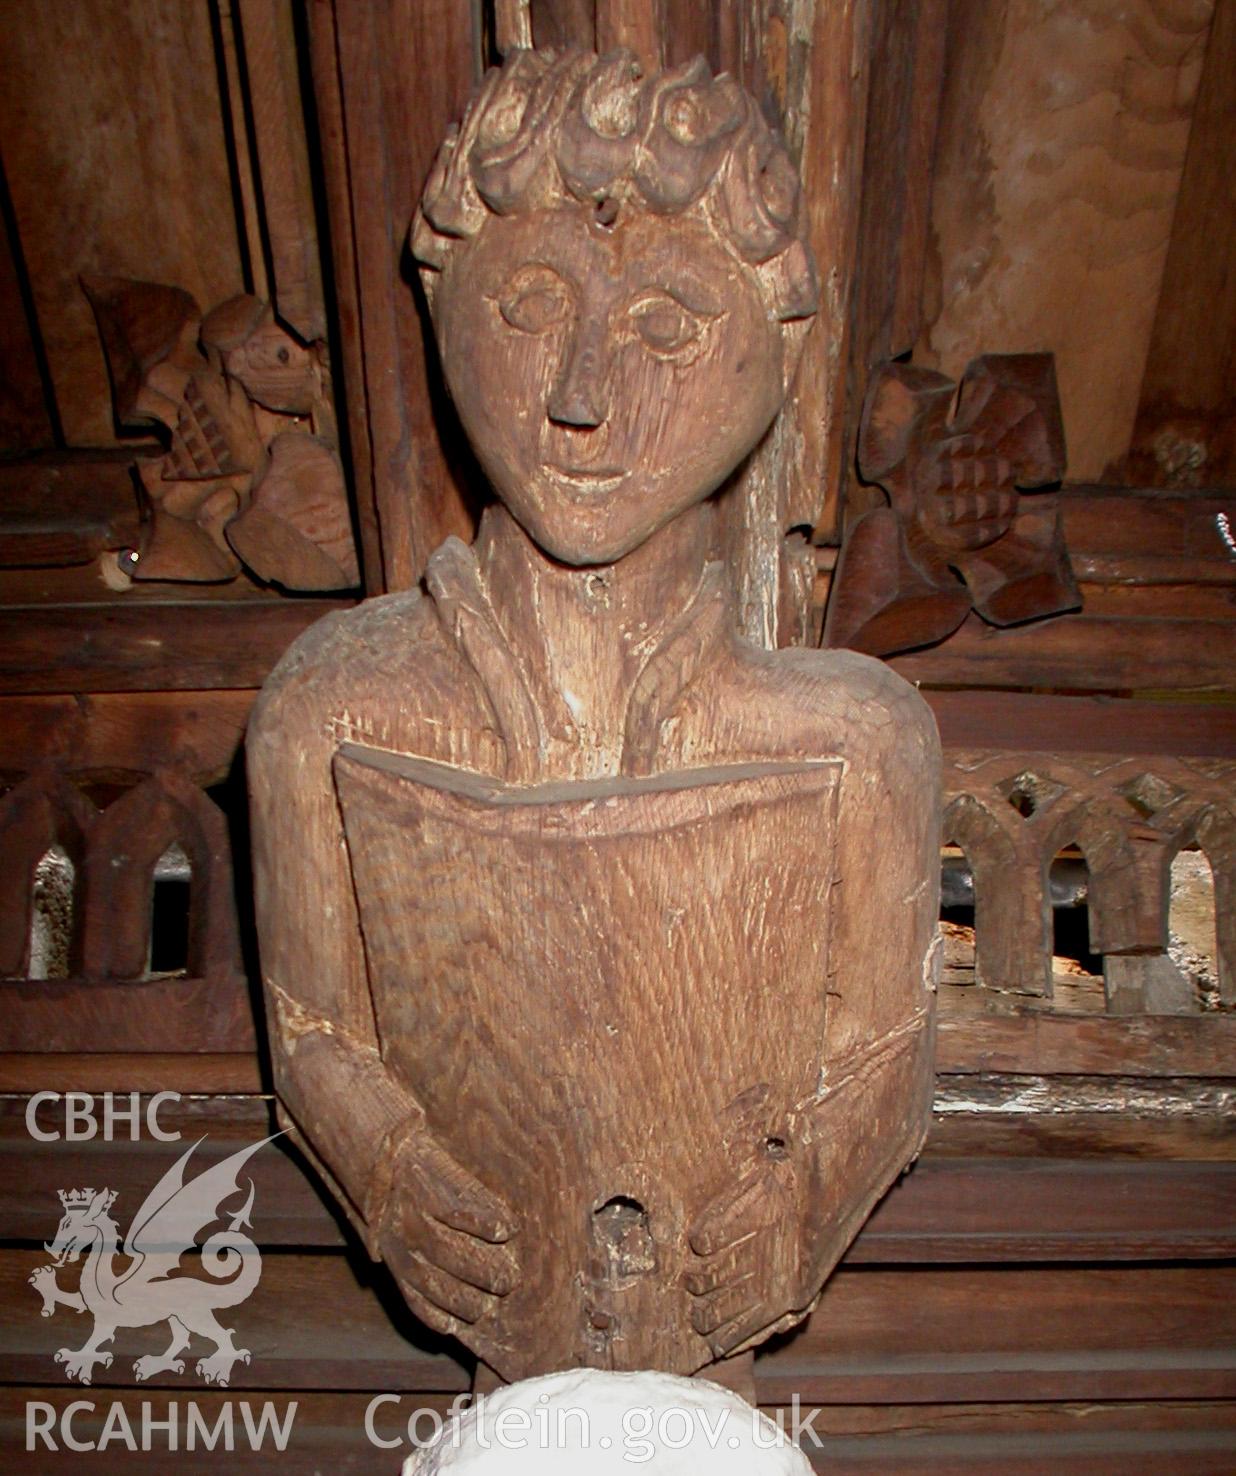 Carved wooden head between Trusses V & VI, North side.